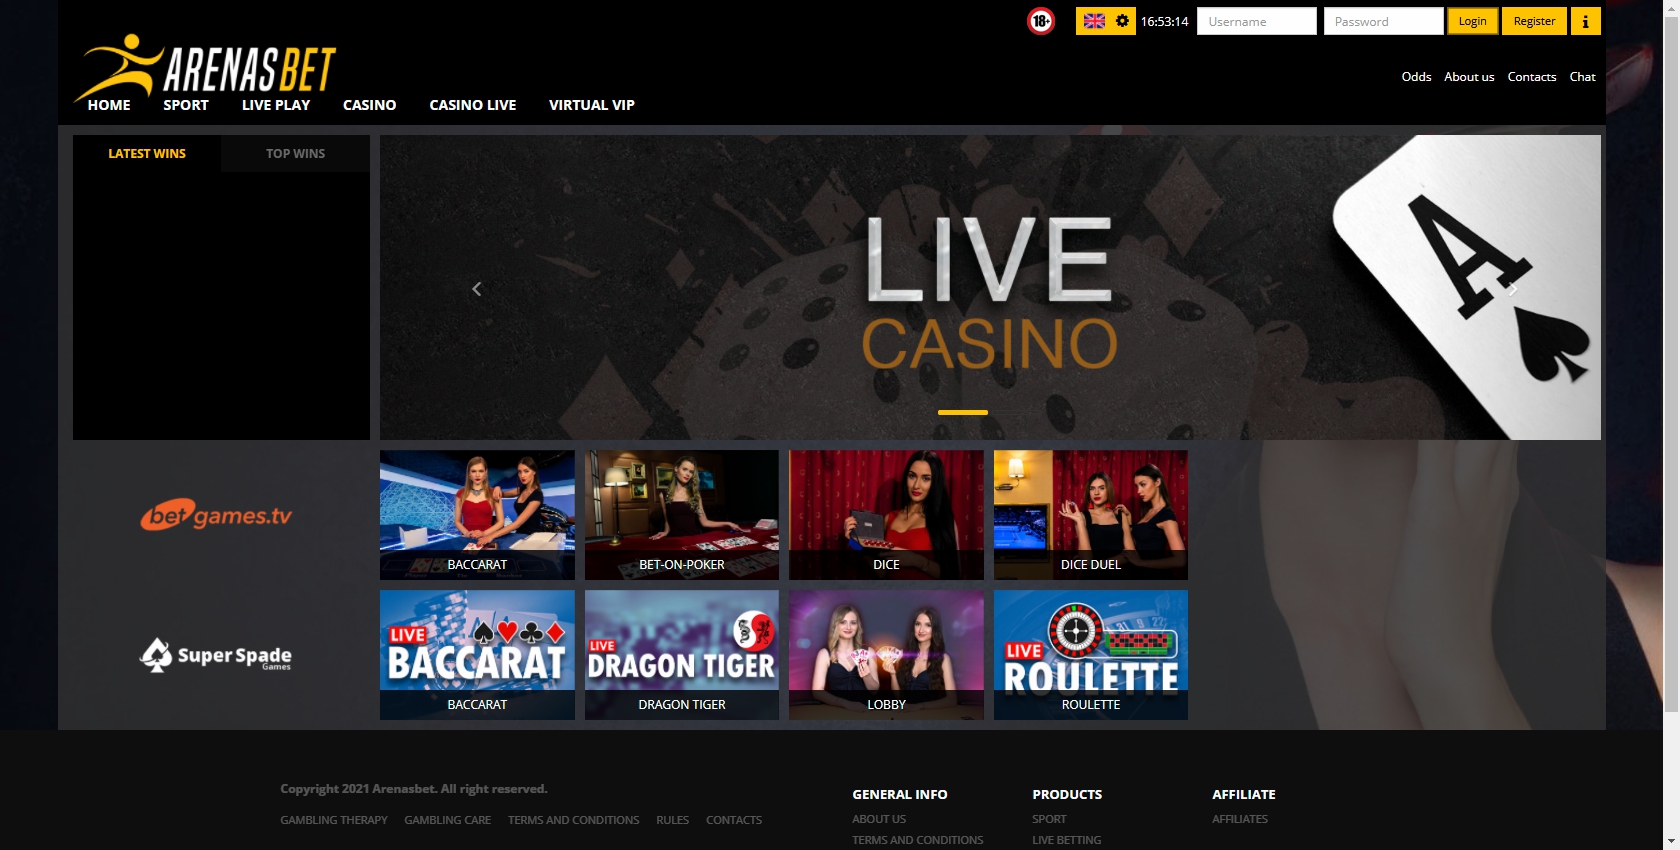 Arenas Bet Casino Live Dealer Games